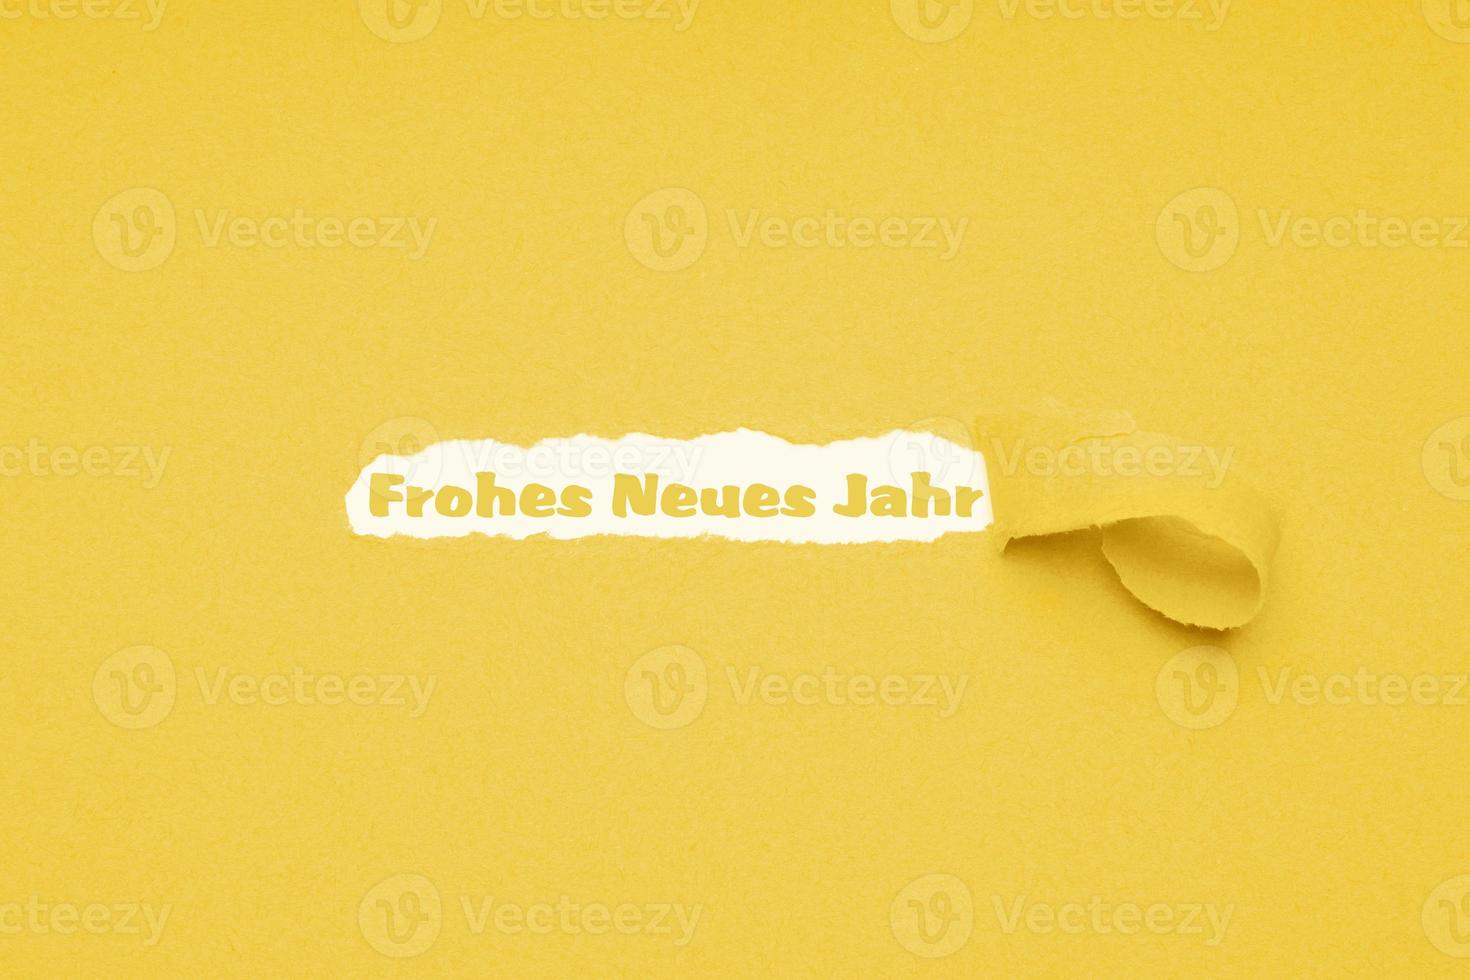 frohes neues jahr significa feliz ano novo em alemão foto